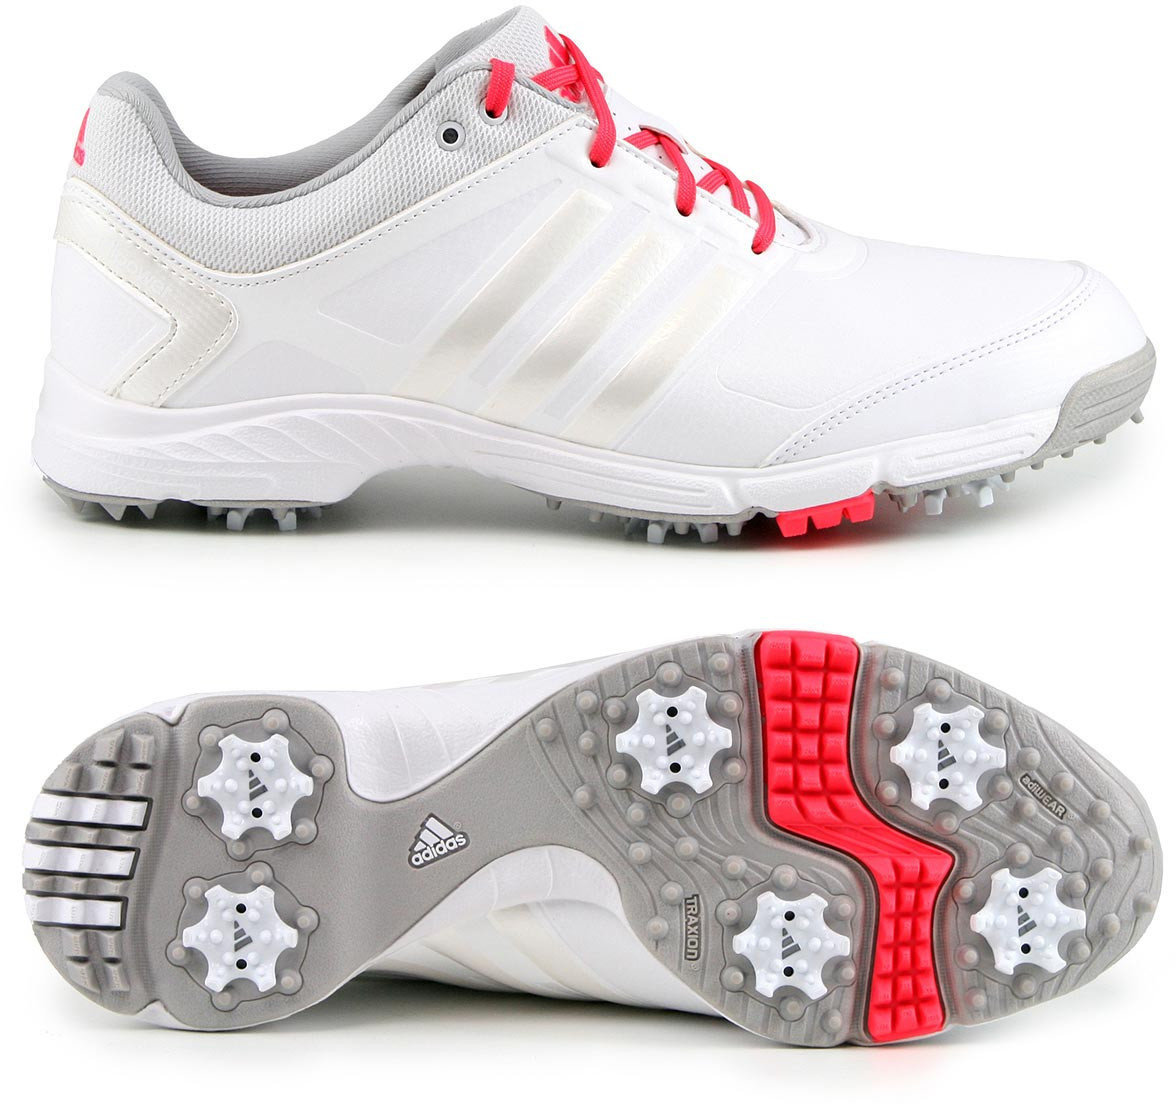 Calçado de golfe para mulher Adidas Adipower Tour Mens Golf Shoes White/Metallic/Shock Red UK 4